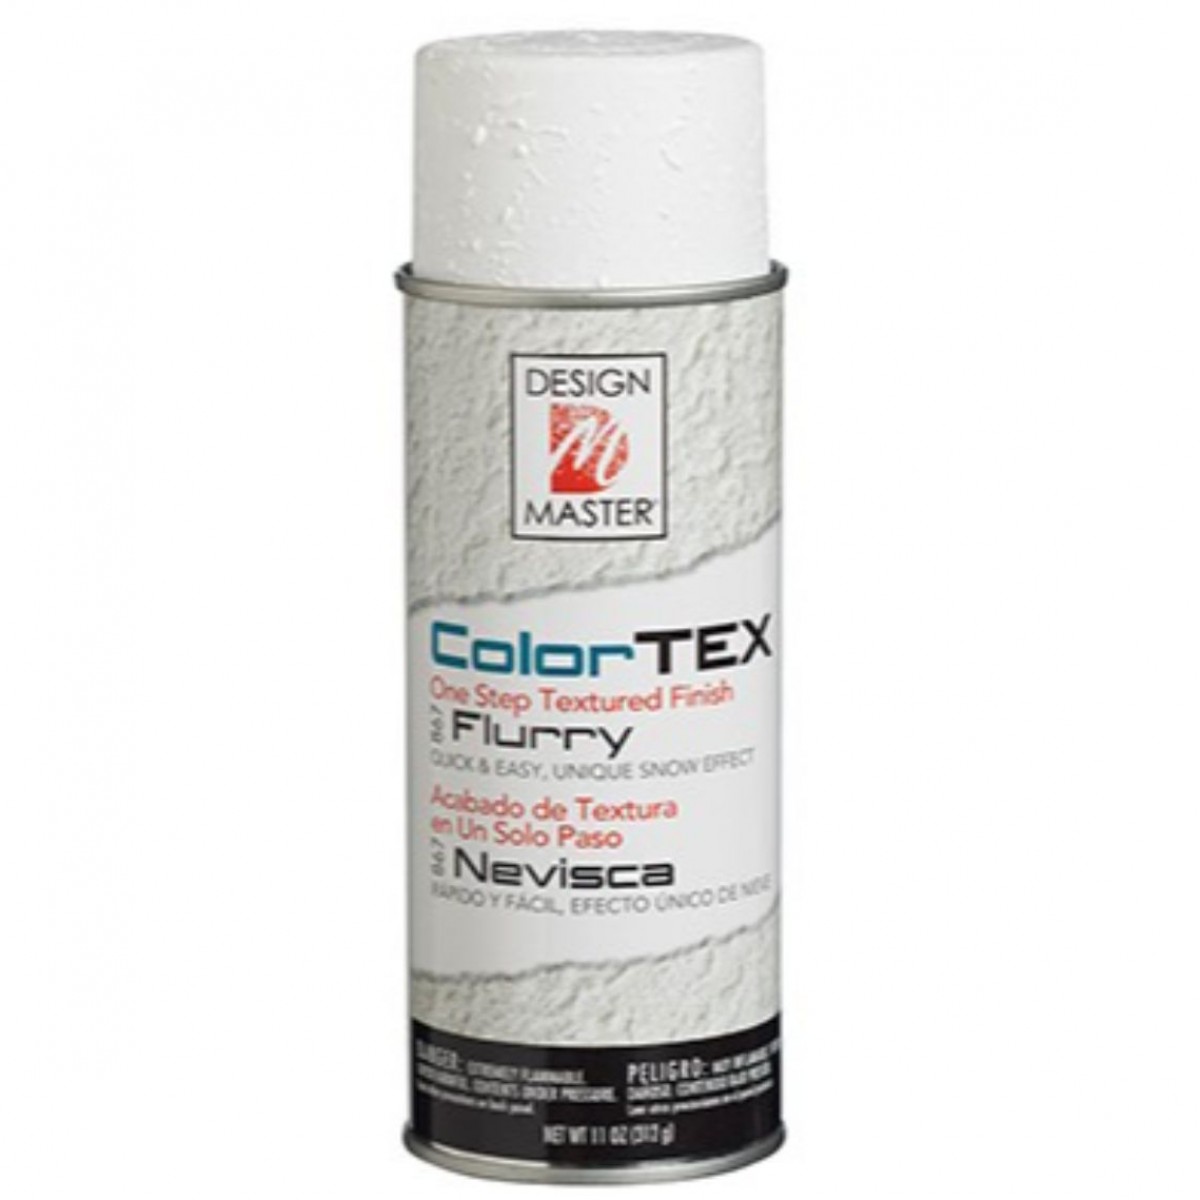 867 Colour TEX Flurry DM Colour Spray Paint - 1 No